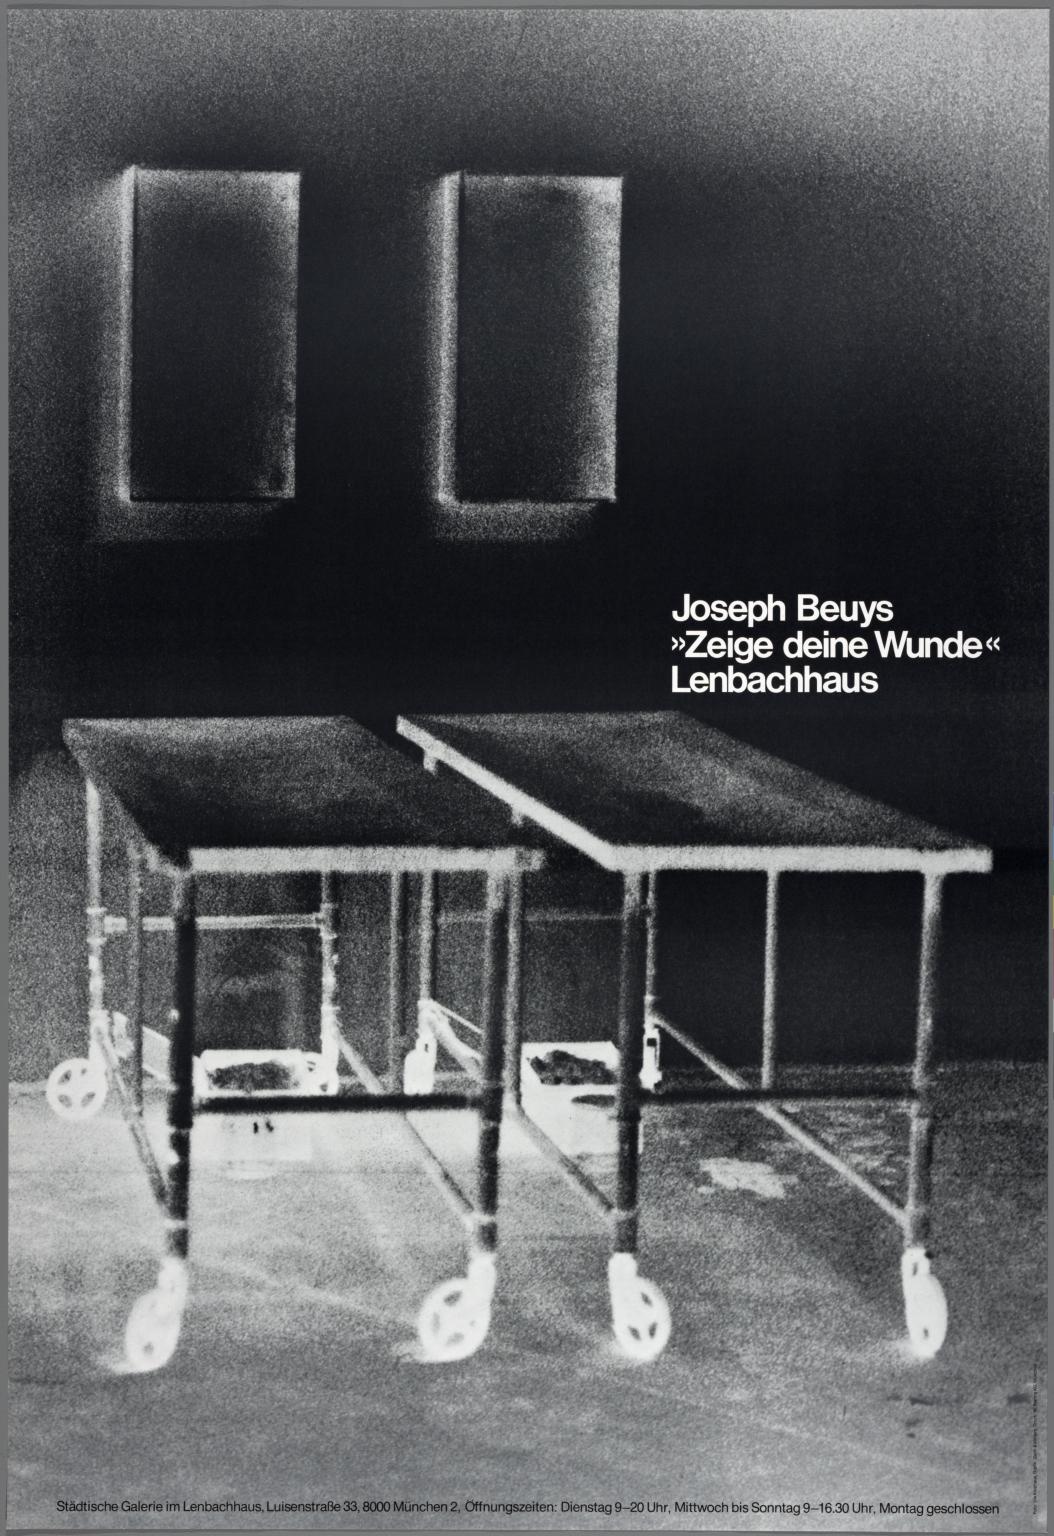 Joseph Beuys: Seige Deine Wunde  (Exhibition Poster)